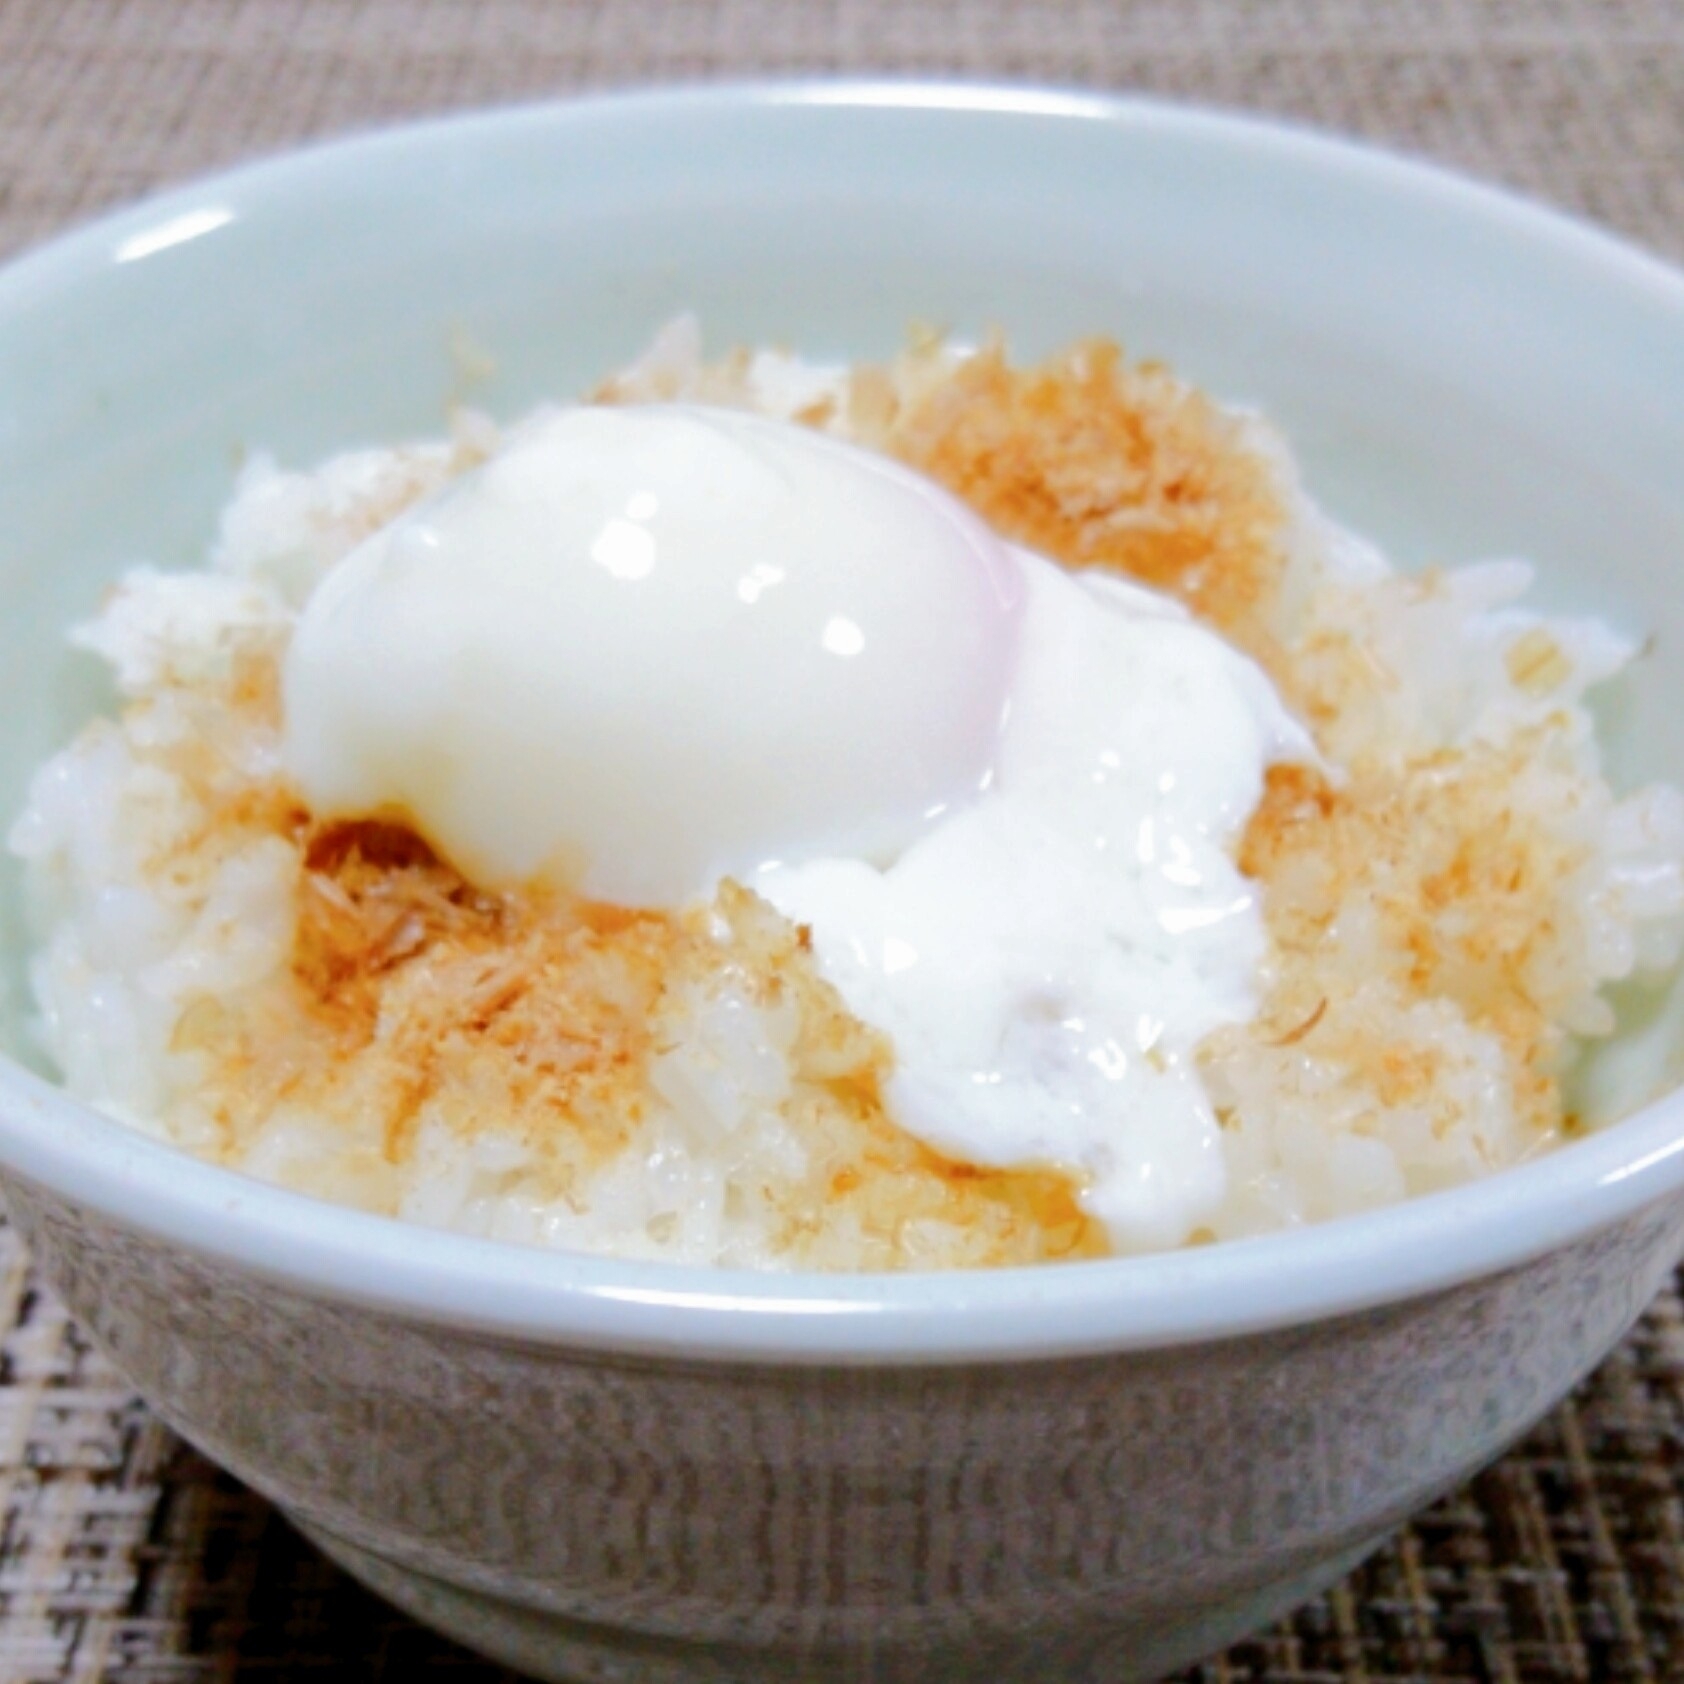 レンジで温泉卵 の卵かけご飯 レシピ 作り方 By 食治家 しょくじや 楽天レシピ